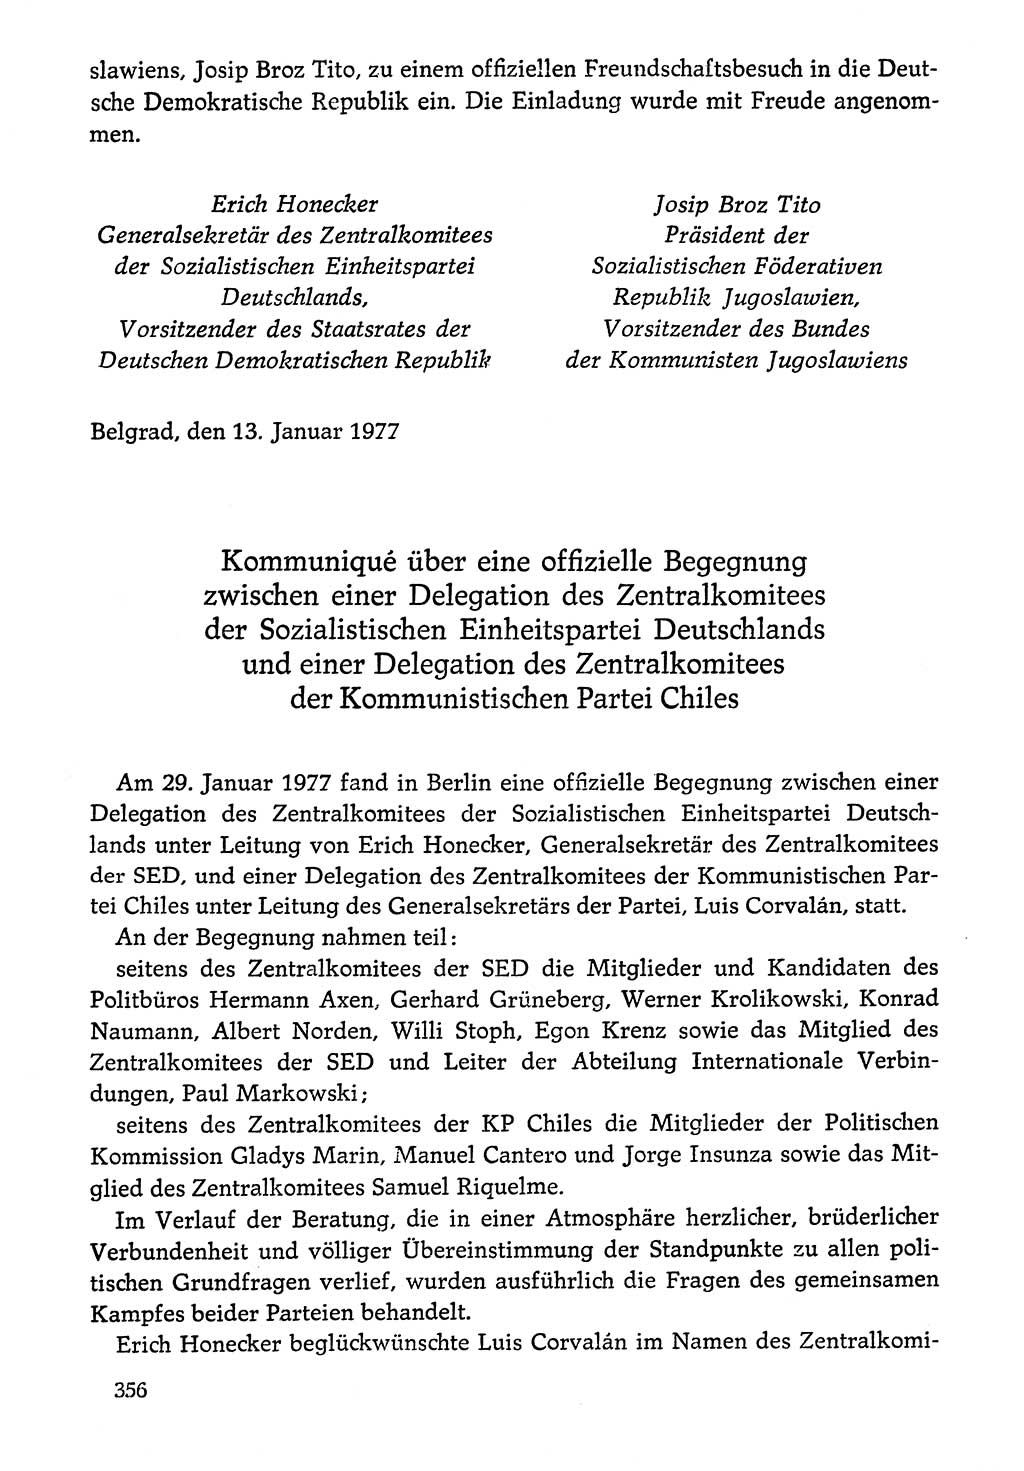 Dokumente der Sozialistischen Einheitspartei Deutschlands (SED) [Deutsche Demokratische Republik (DDR)] 1976-1977, Seite 356 (Dok. SED DDR 1976-1977, S. 356)